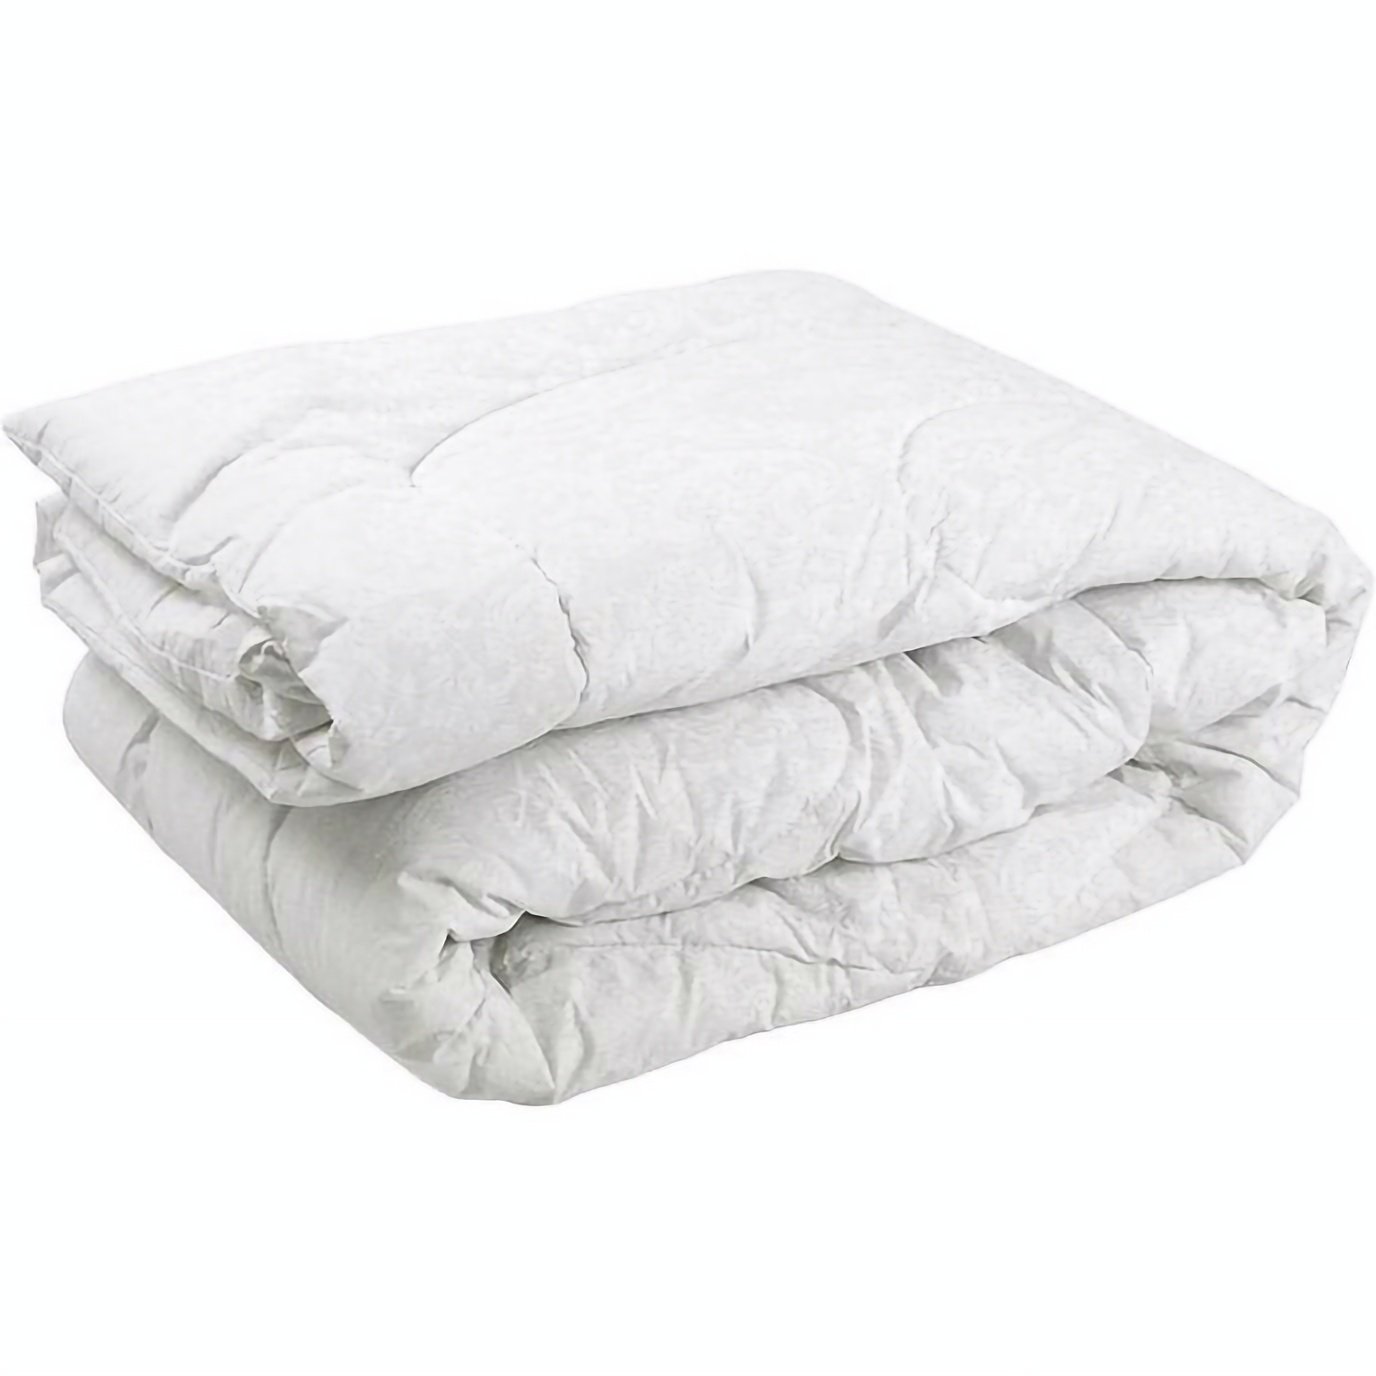 Одеяло силиконовое Руно Белый вензель, евростандарт, бязь, 220х200 см, белое (322.02ГСЛУ_Білий вензель) - фото 1